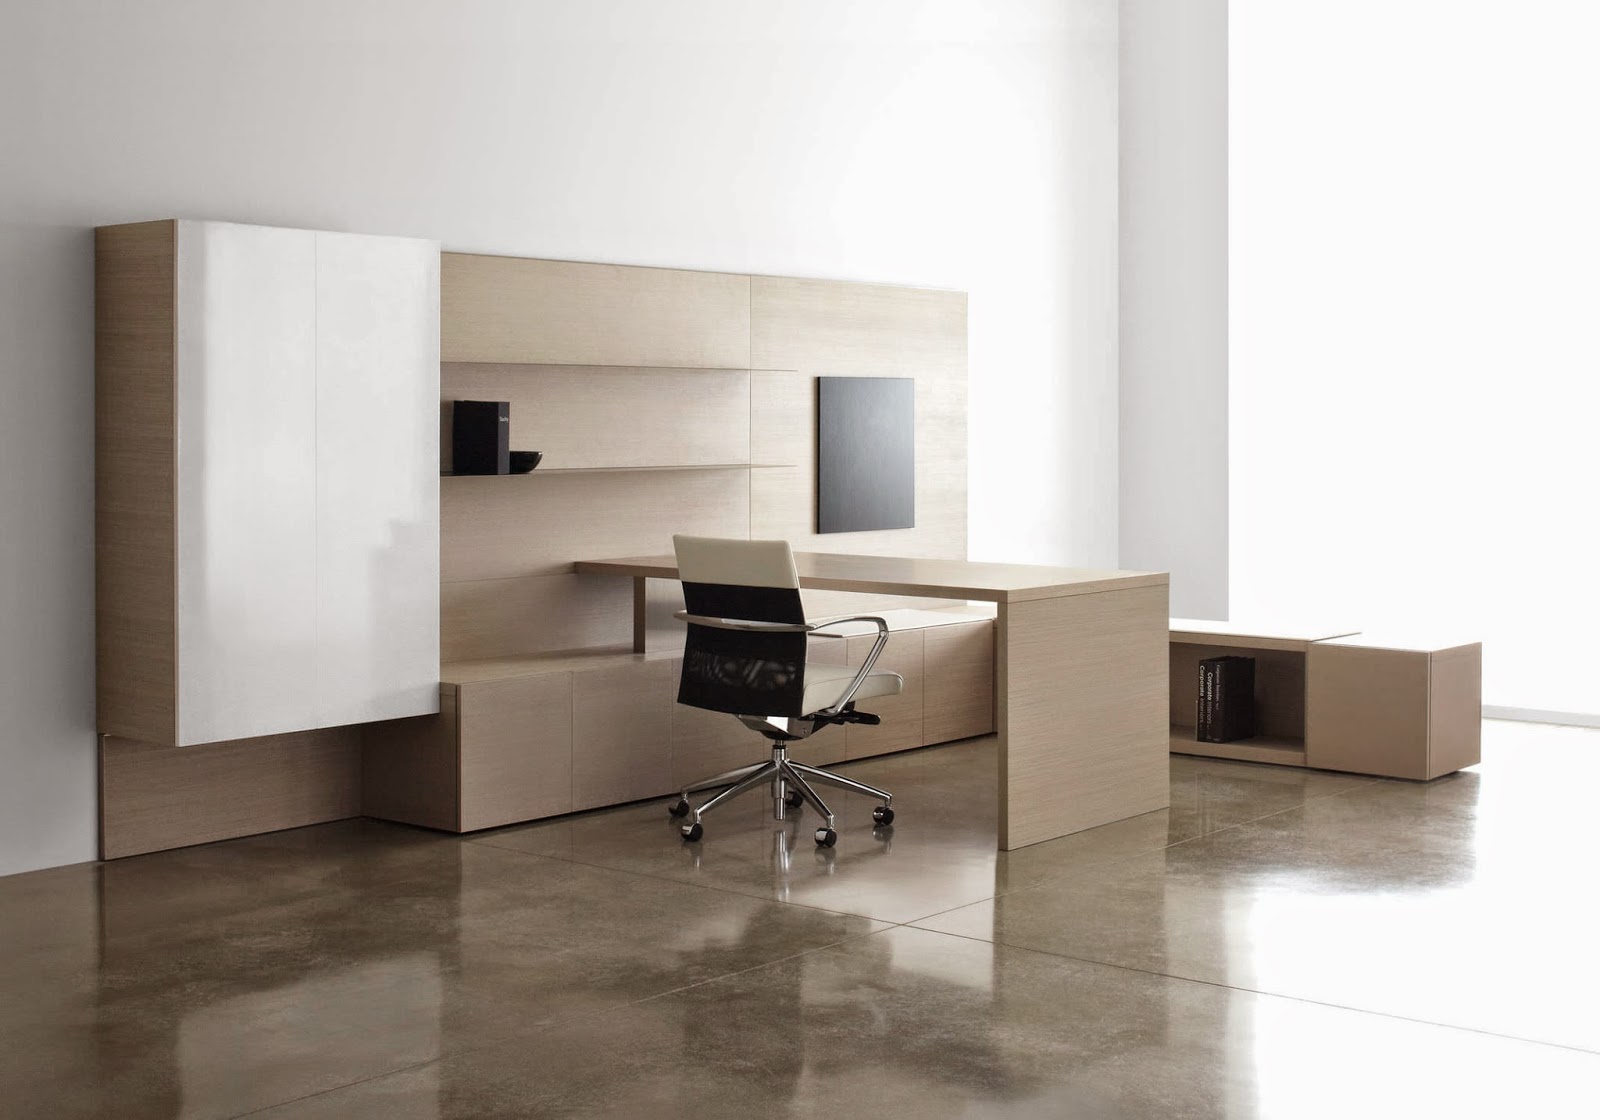 Productosparaempresas: Muebles recomendados para una oficina de estilo minimalista